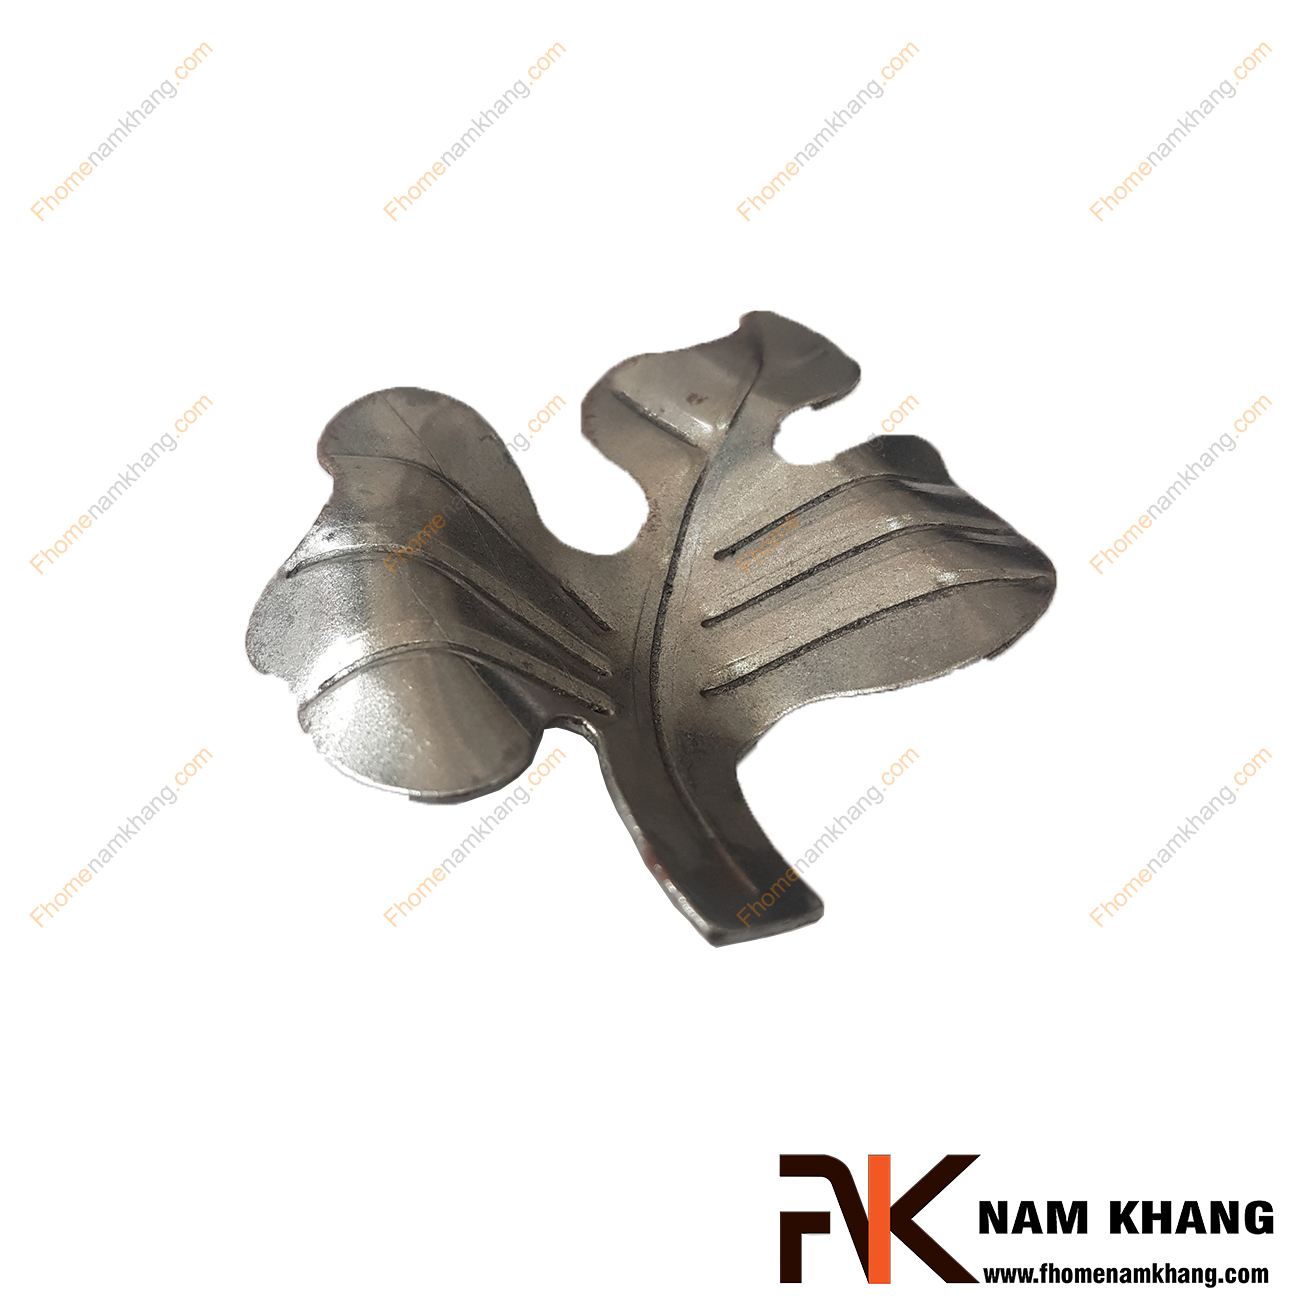 Hoa lá thép dập NKS-113P được tạo hình chiếc lá, là phụ kiện trang trí dành cho chác sản phẩm sắt uốn mỹ thuật   Chi tiết được dập nỗi trên bề mặt, mô phỏng chính xác chi tiết thực tế.